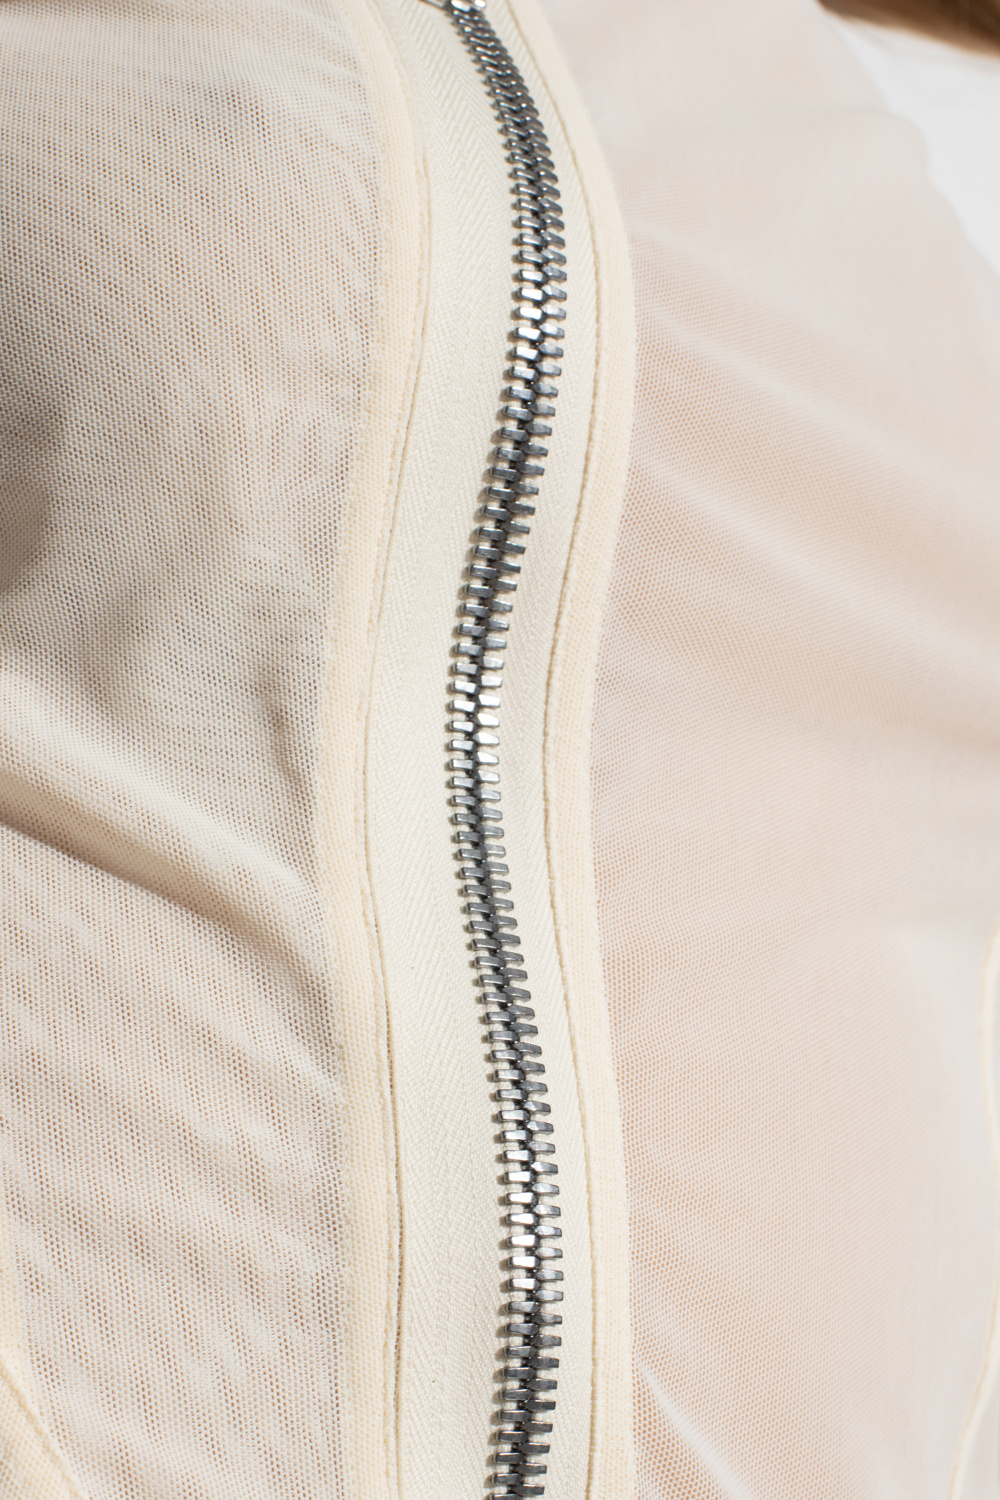 Gwen Stefani Pairs Lets Get Lazy Sweatshirt with Embellished Jeans & Cream Vans Slip-Ons ‘Princess’ semi-sheer top